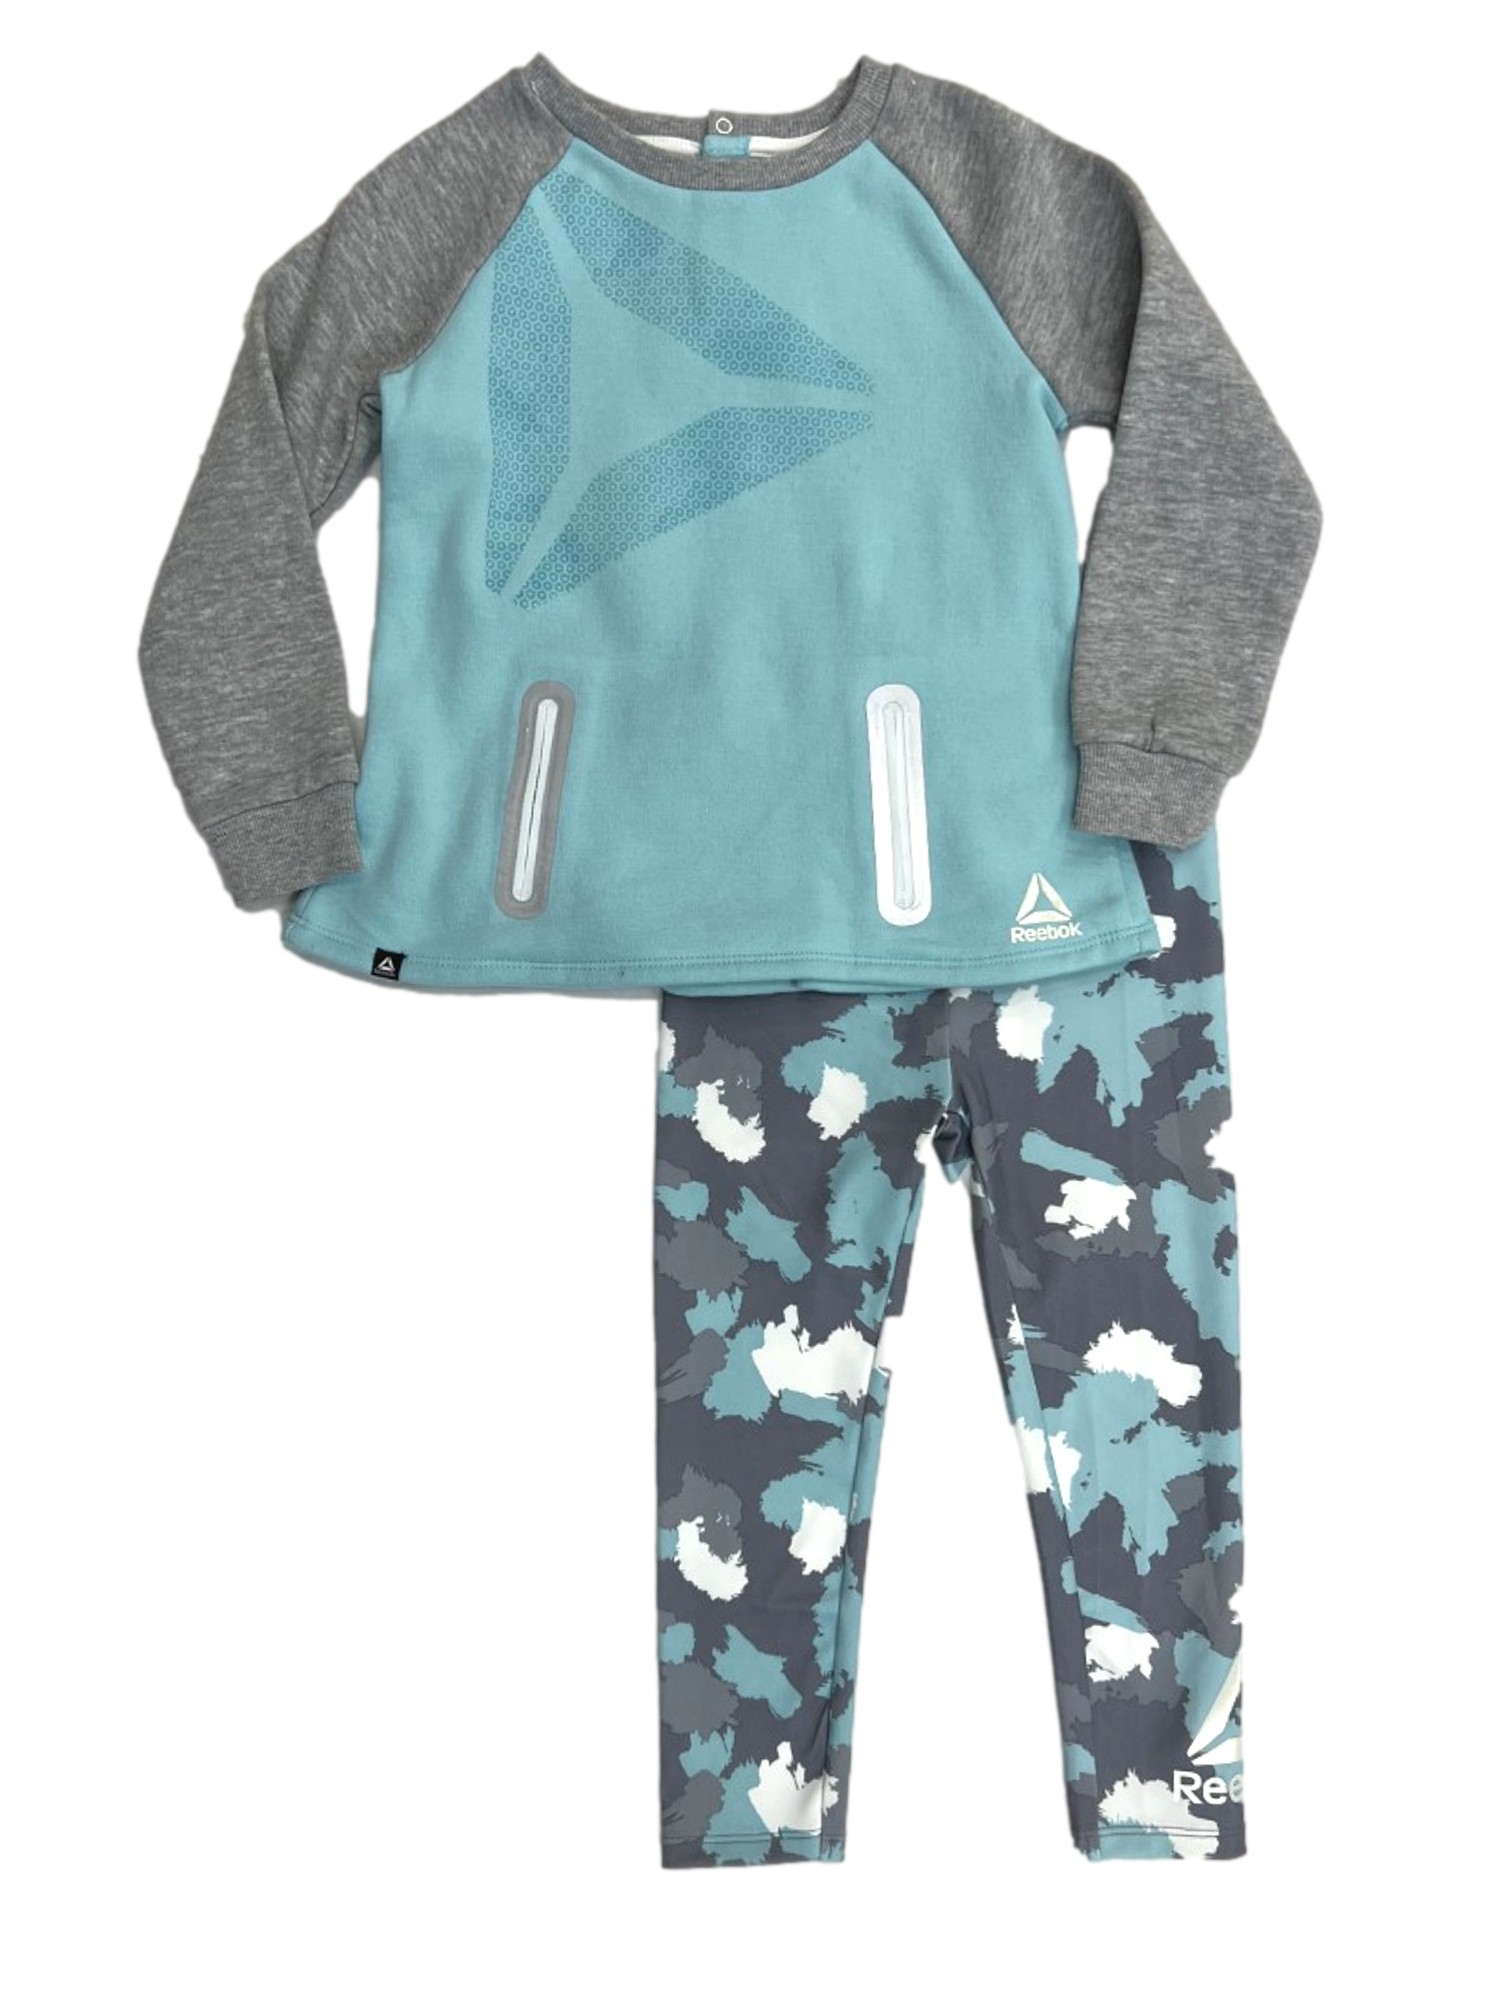 Reebok Toddler Girls Gray & Blue Sweatshirt & Camouflage Leggings Set 4T